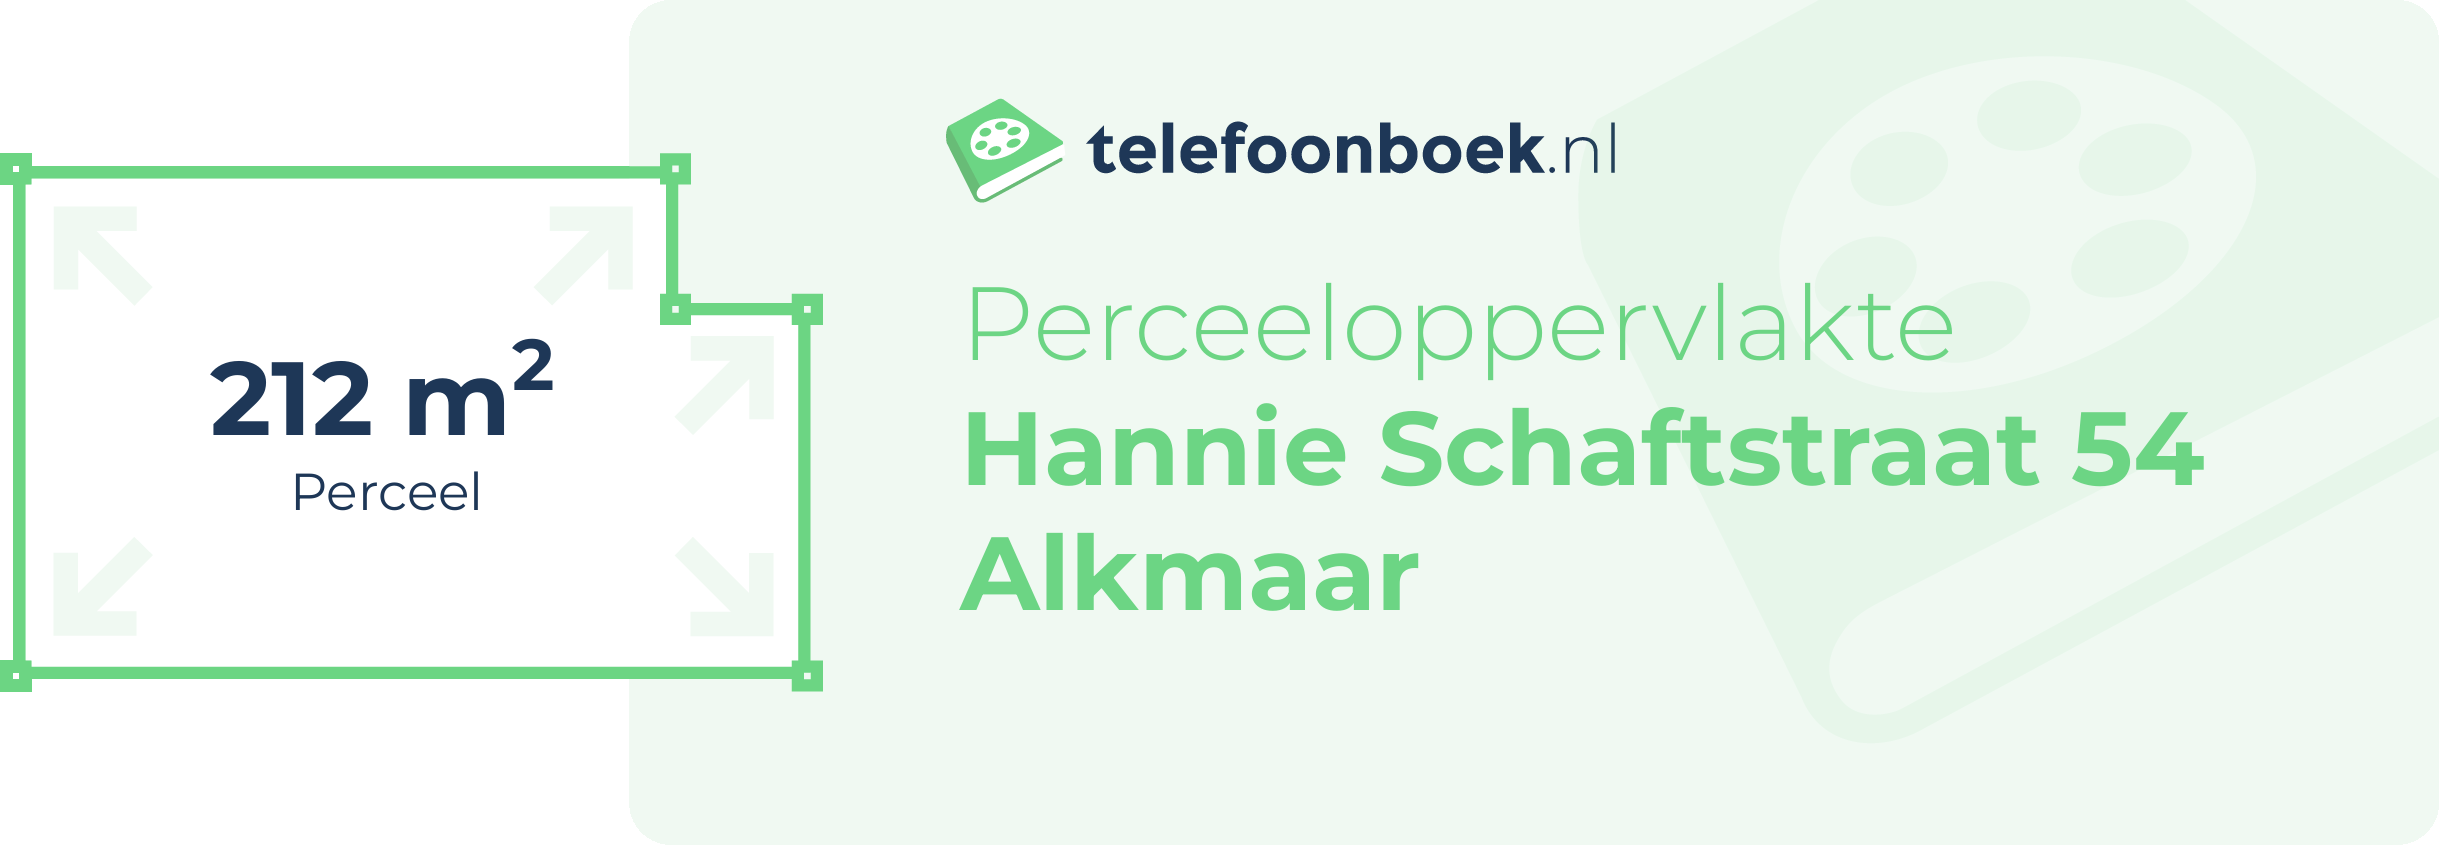 Perceeloppervlakte Hannie Schaftstraat 54 Alkmaar